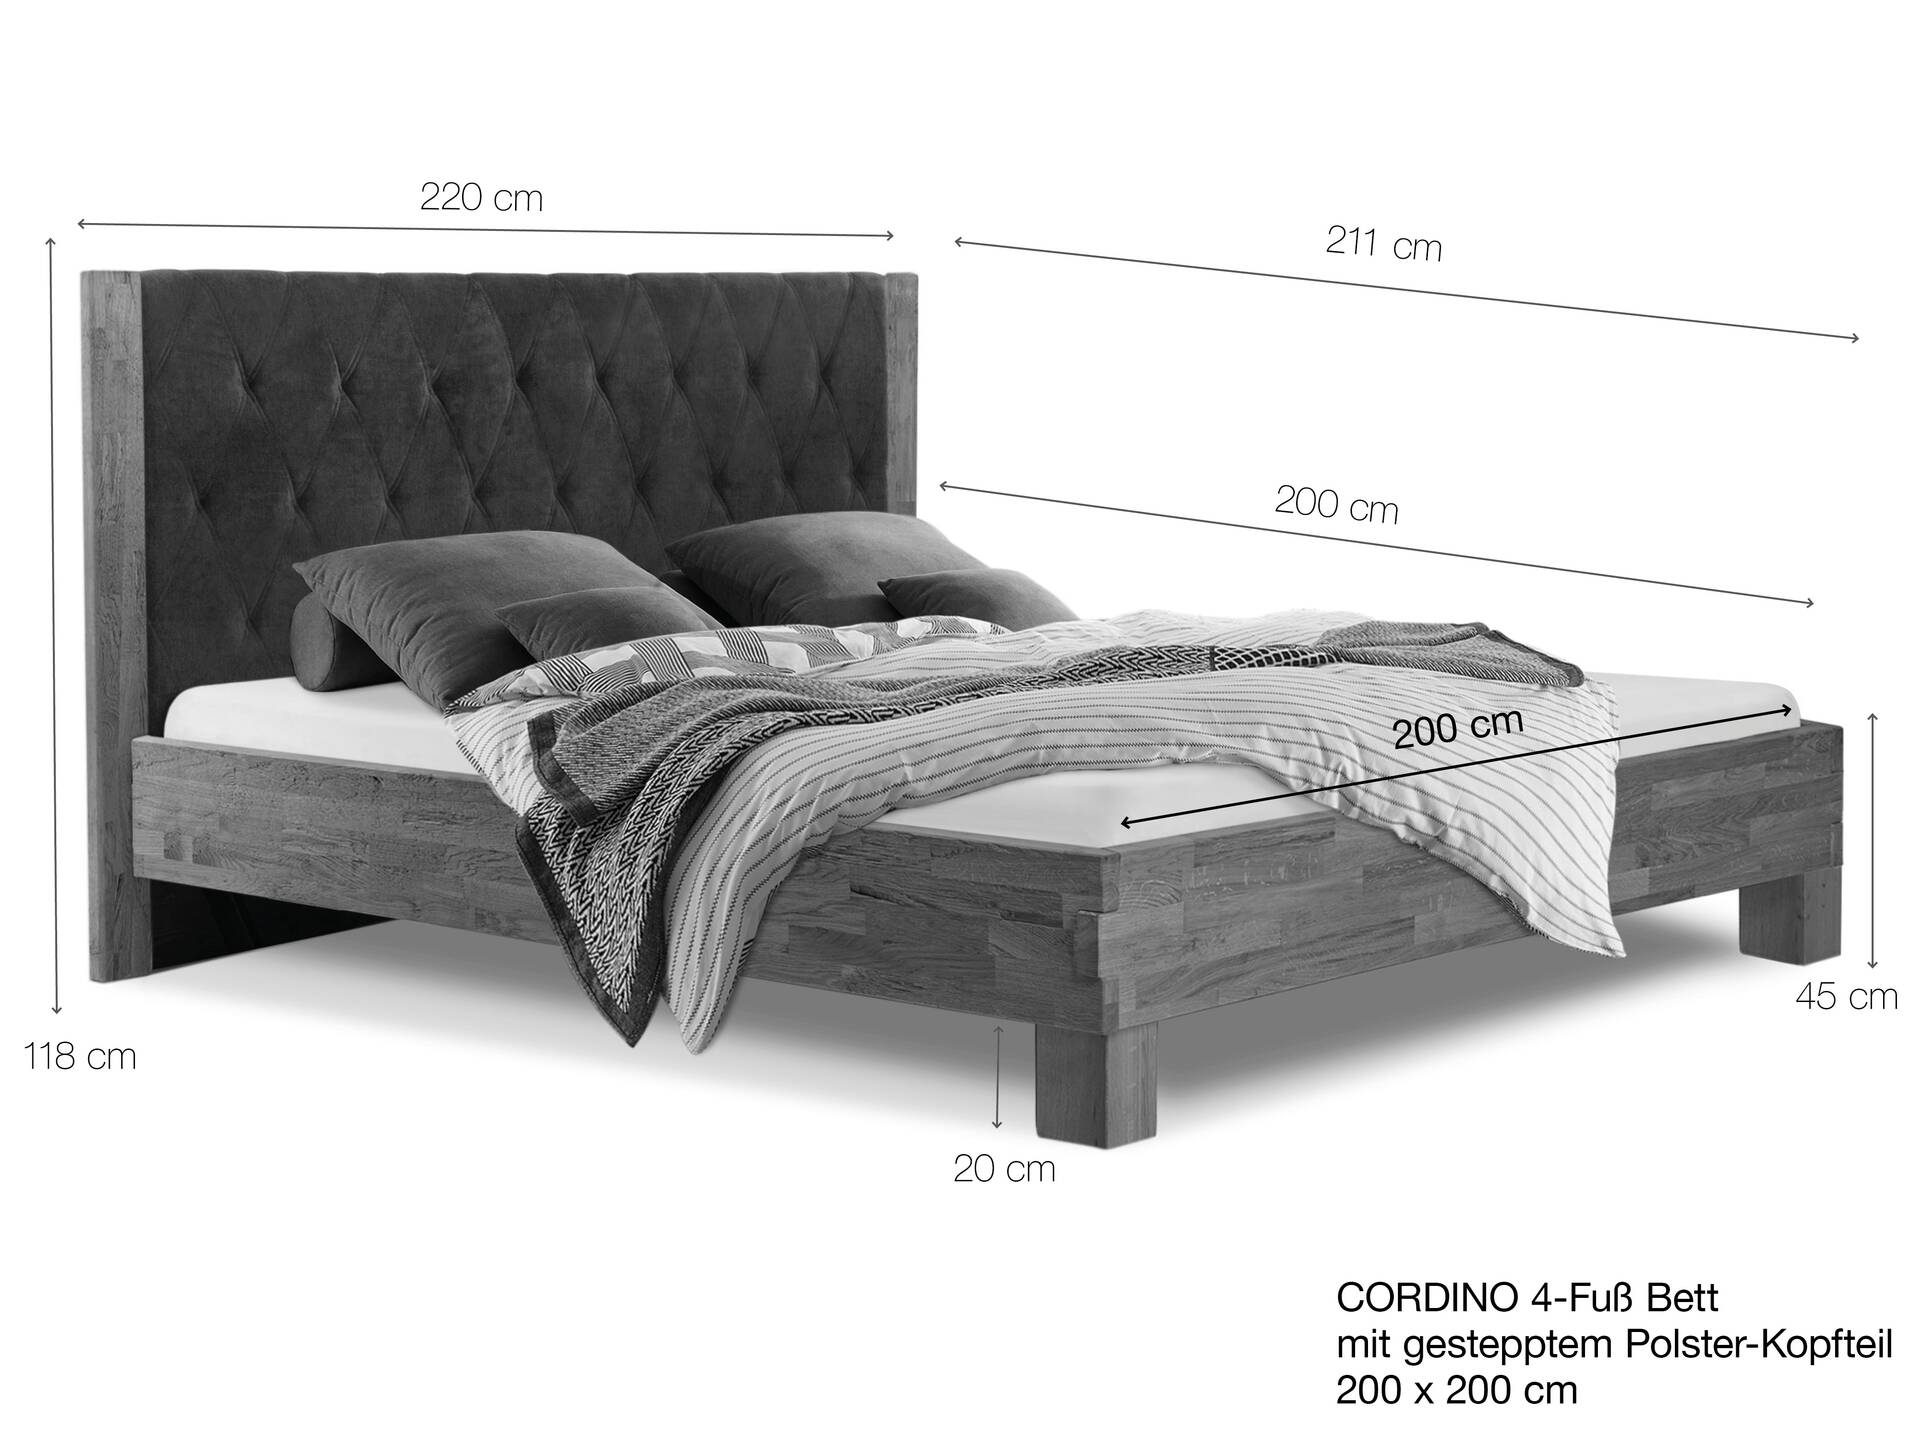 CORDINO 4-Fuß-Bett aus Eiche mit gestepptem Polster-Kopfteil, Material Massivholz 200 x 200 cm | Eiche lackiert | Stoff Braun | gebürstet